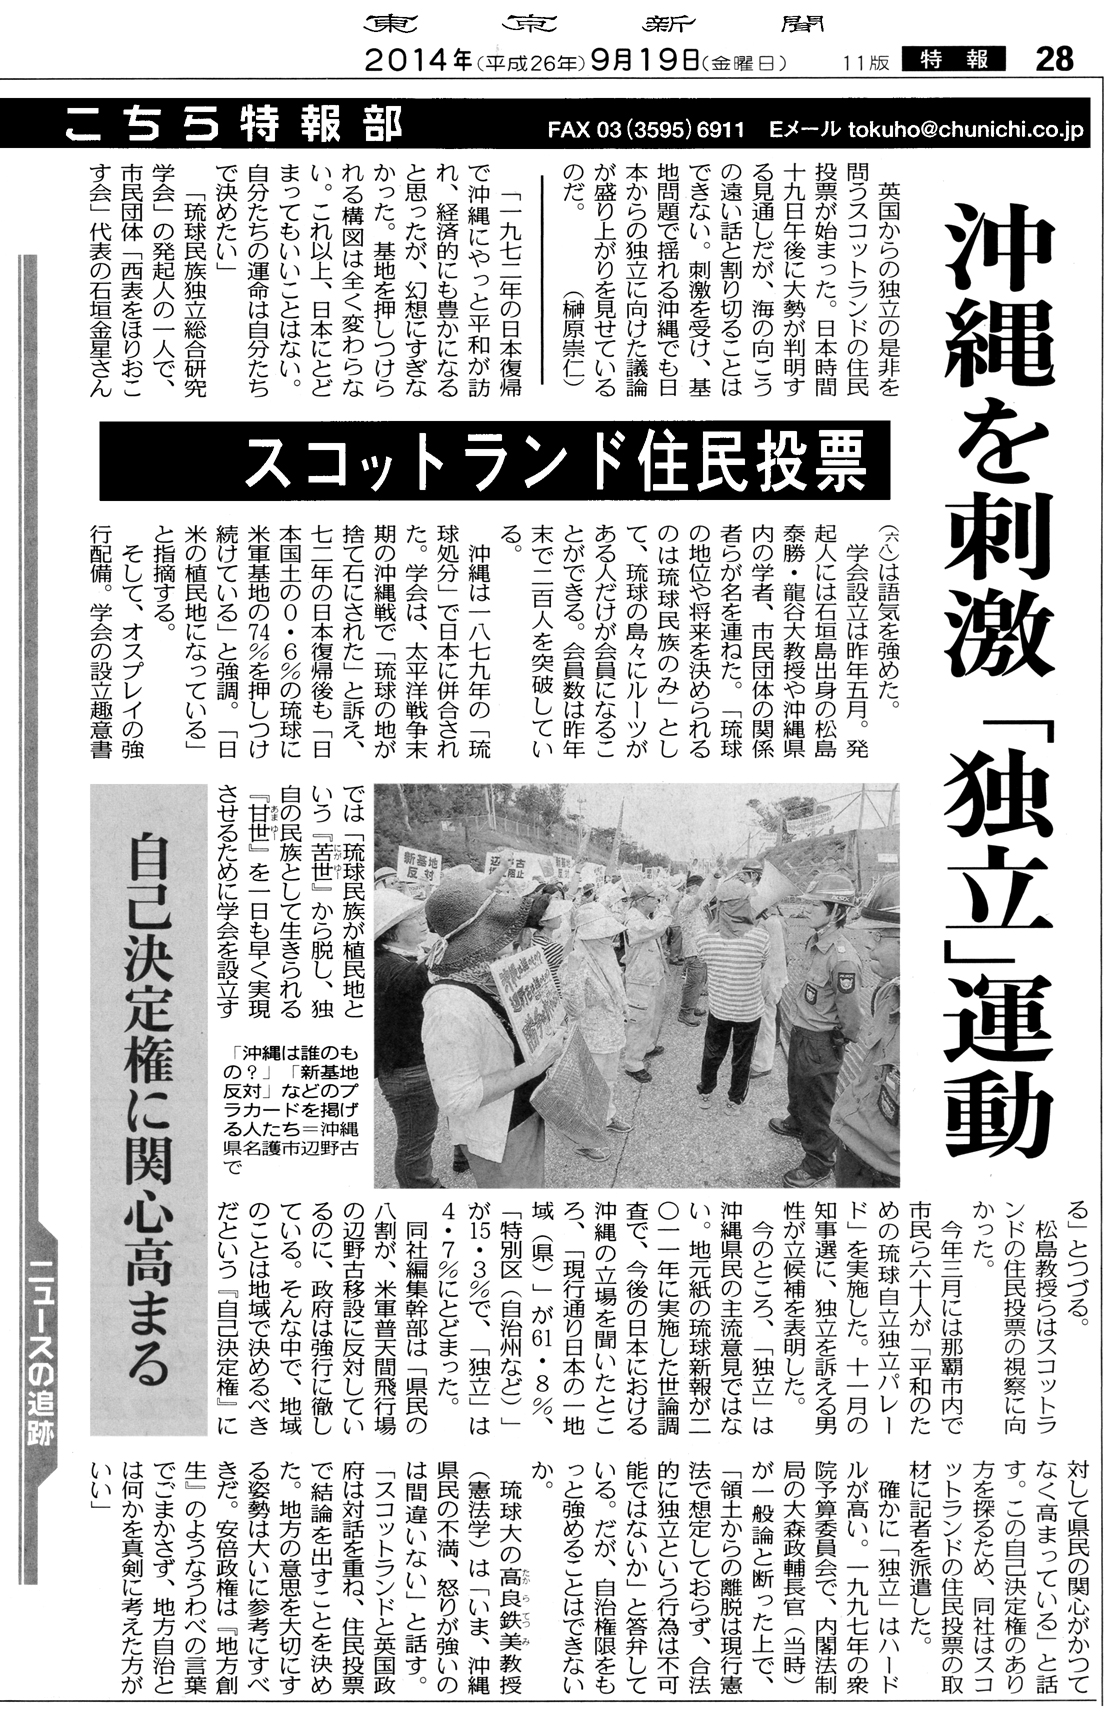 沖縄を刺激 「独立」運動